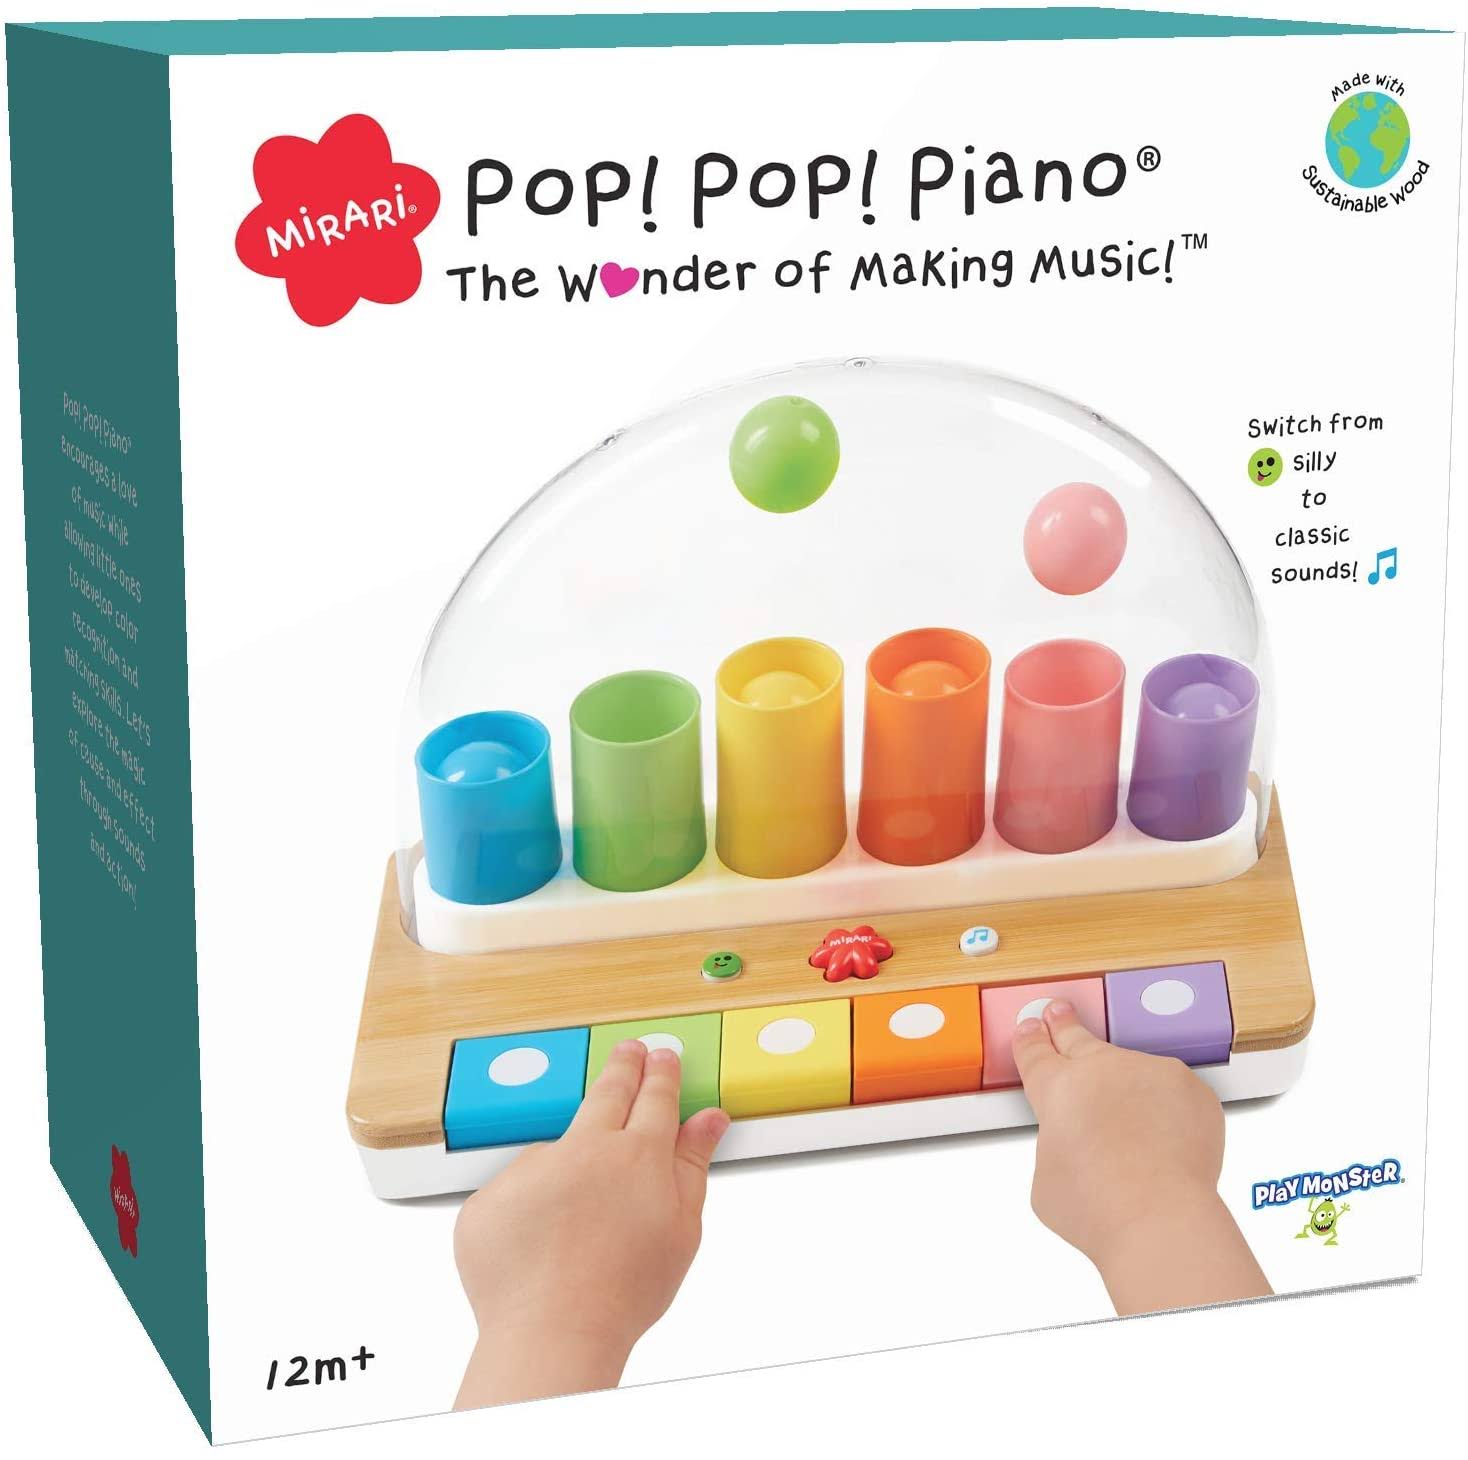 Mirari Pop! Pop! Piano -- The Wonder of Making Music!